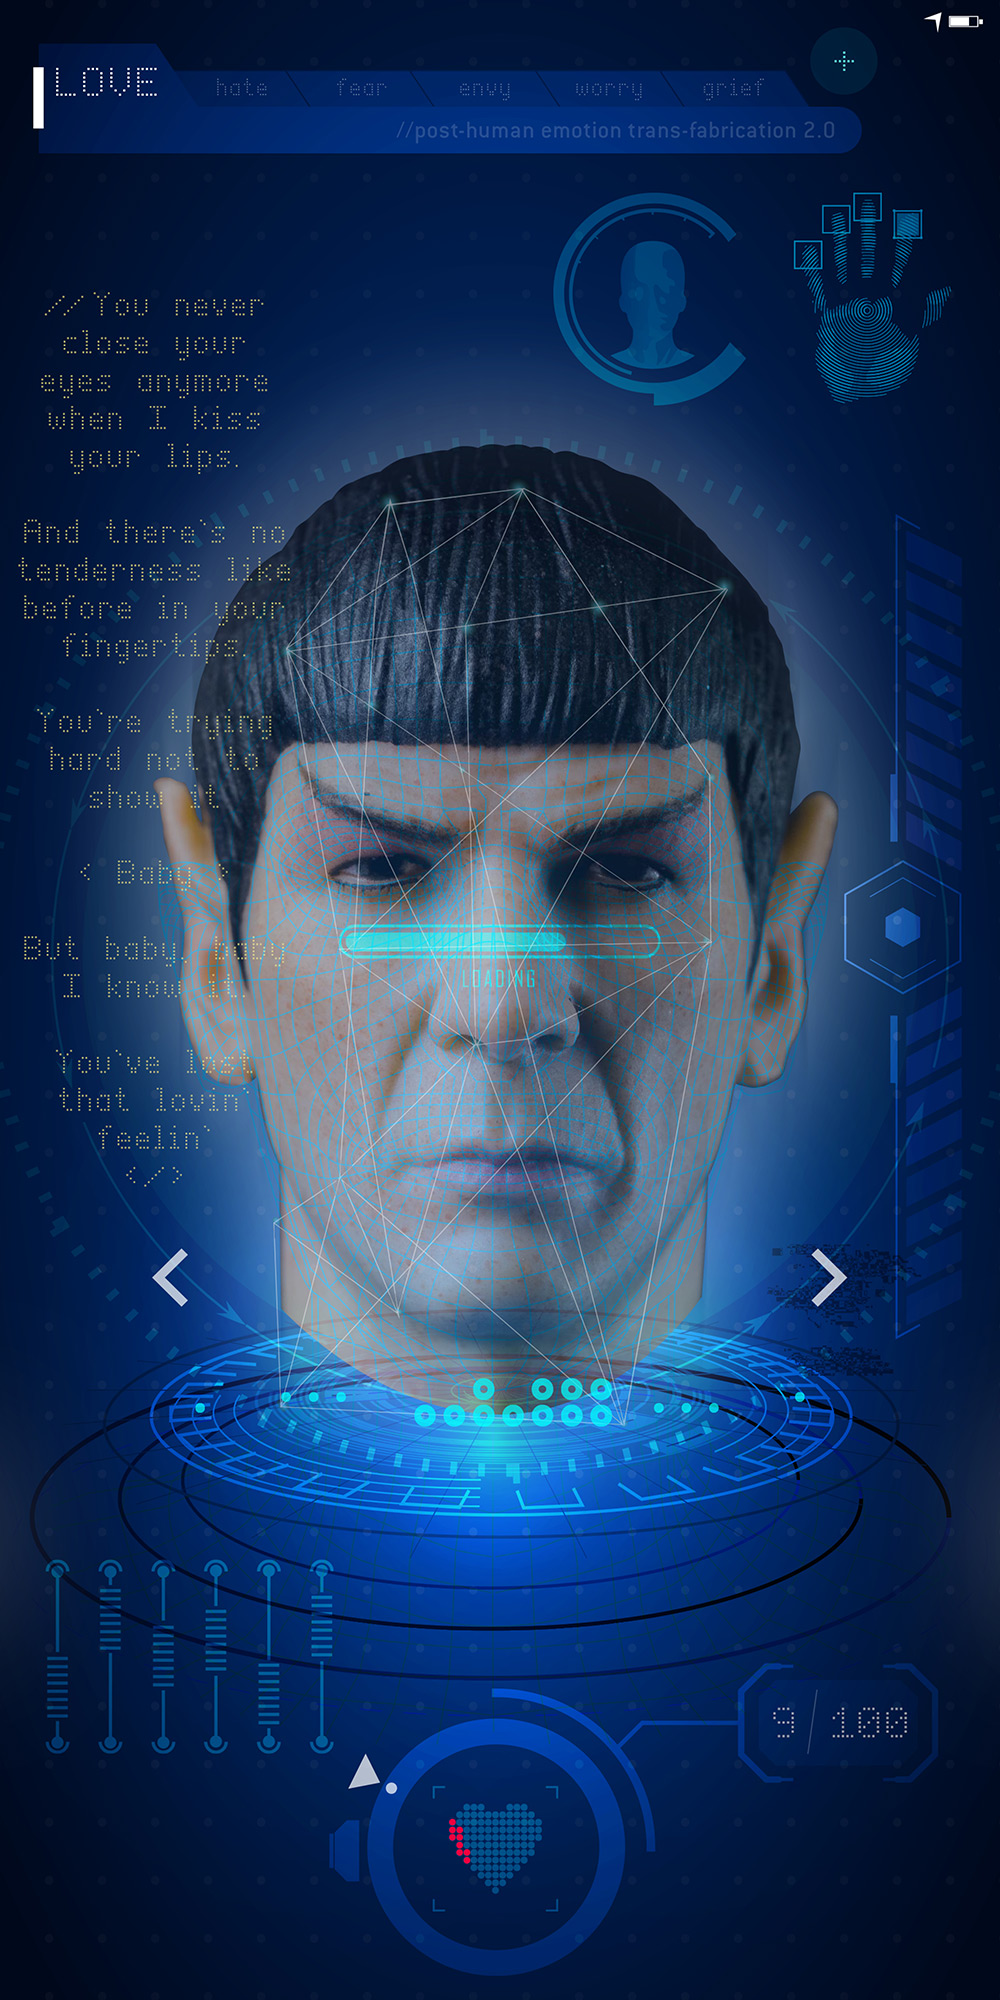 Jeff Kern design for "Mr Spock"